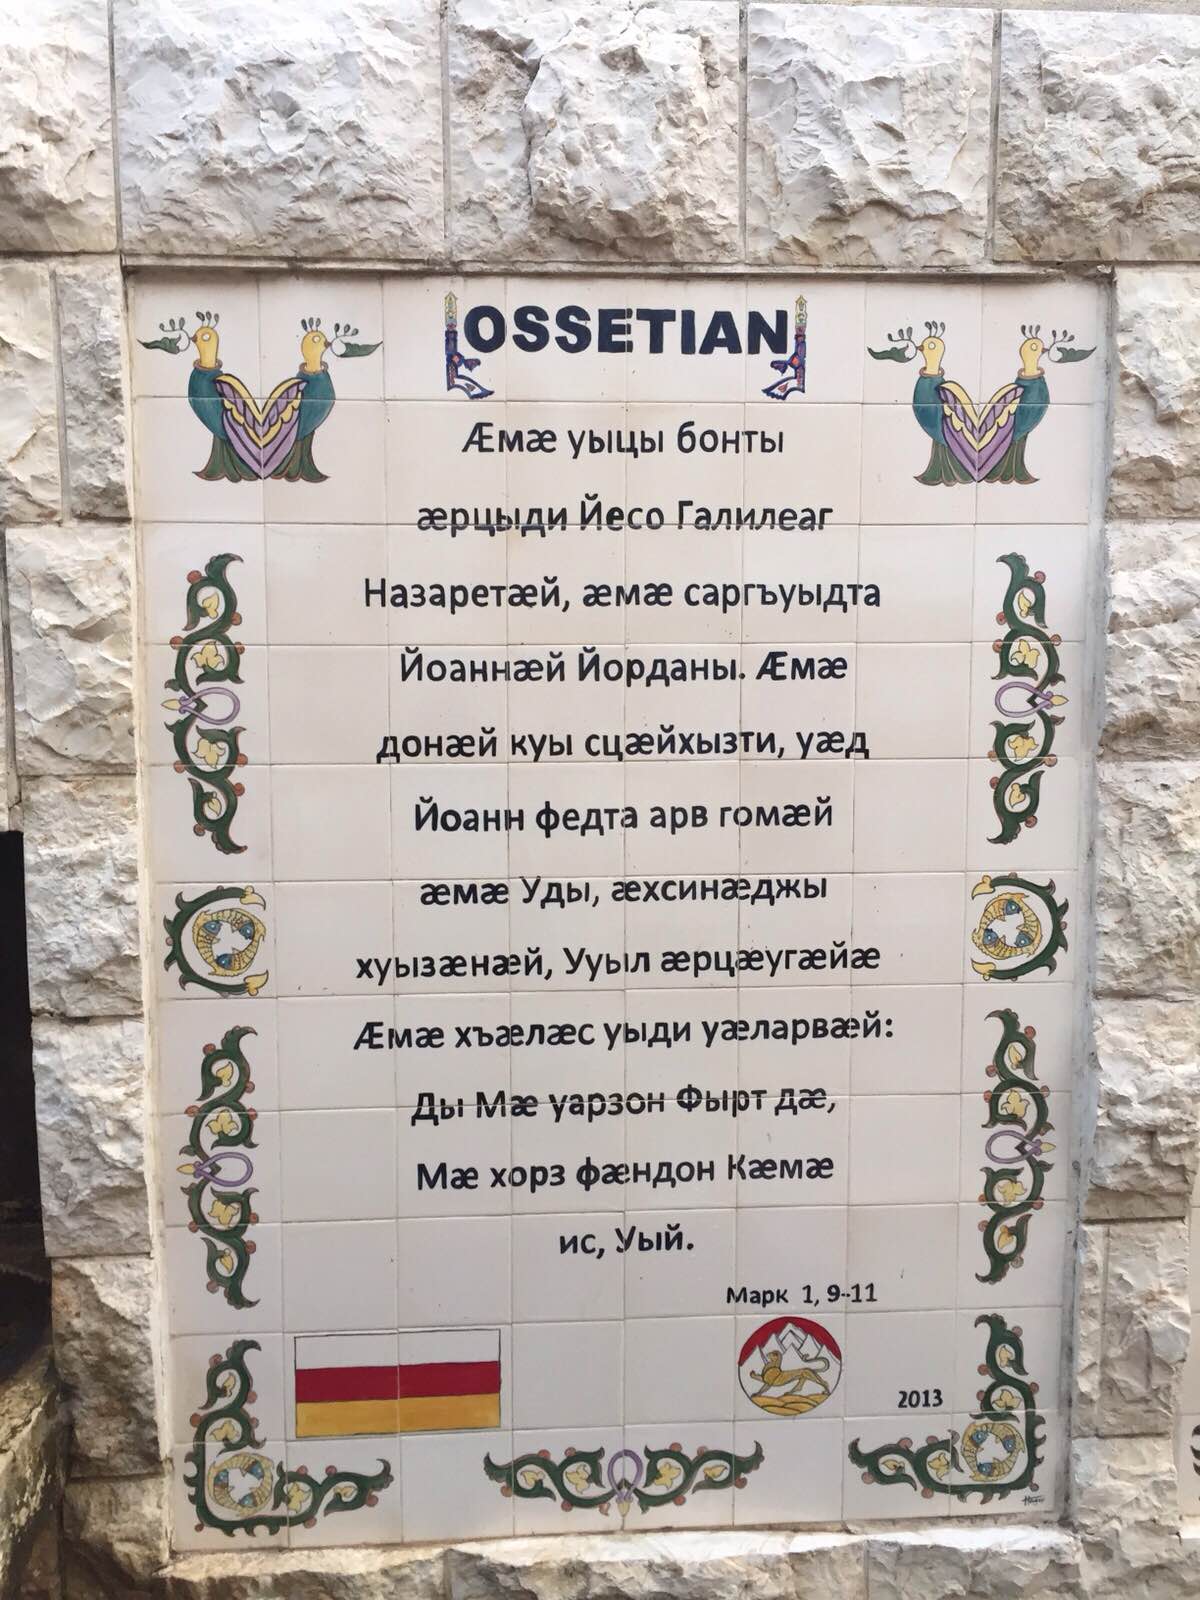 Поздравление с рождением на осетинском языке